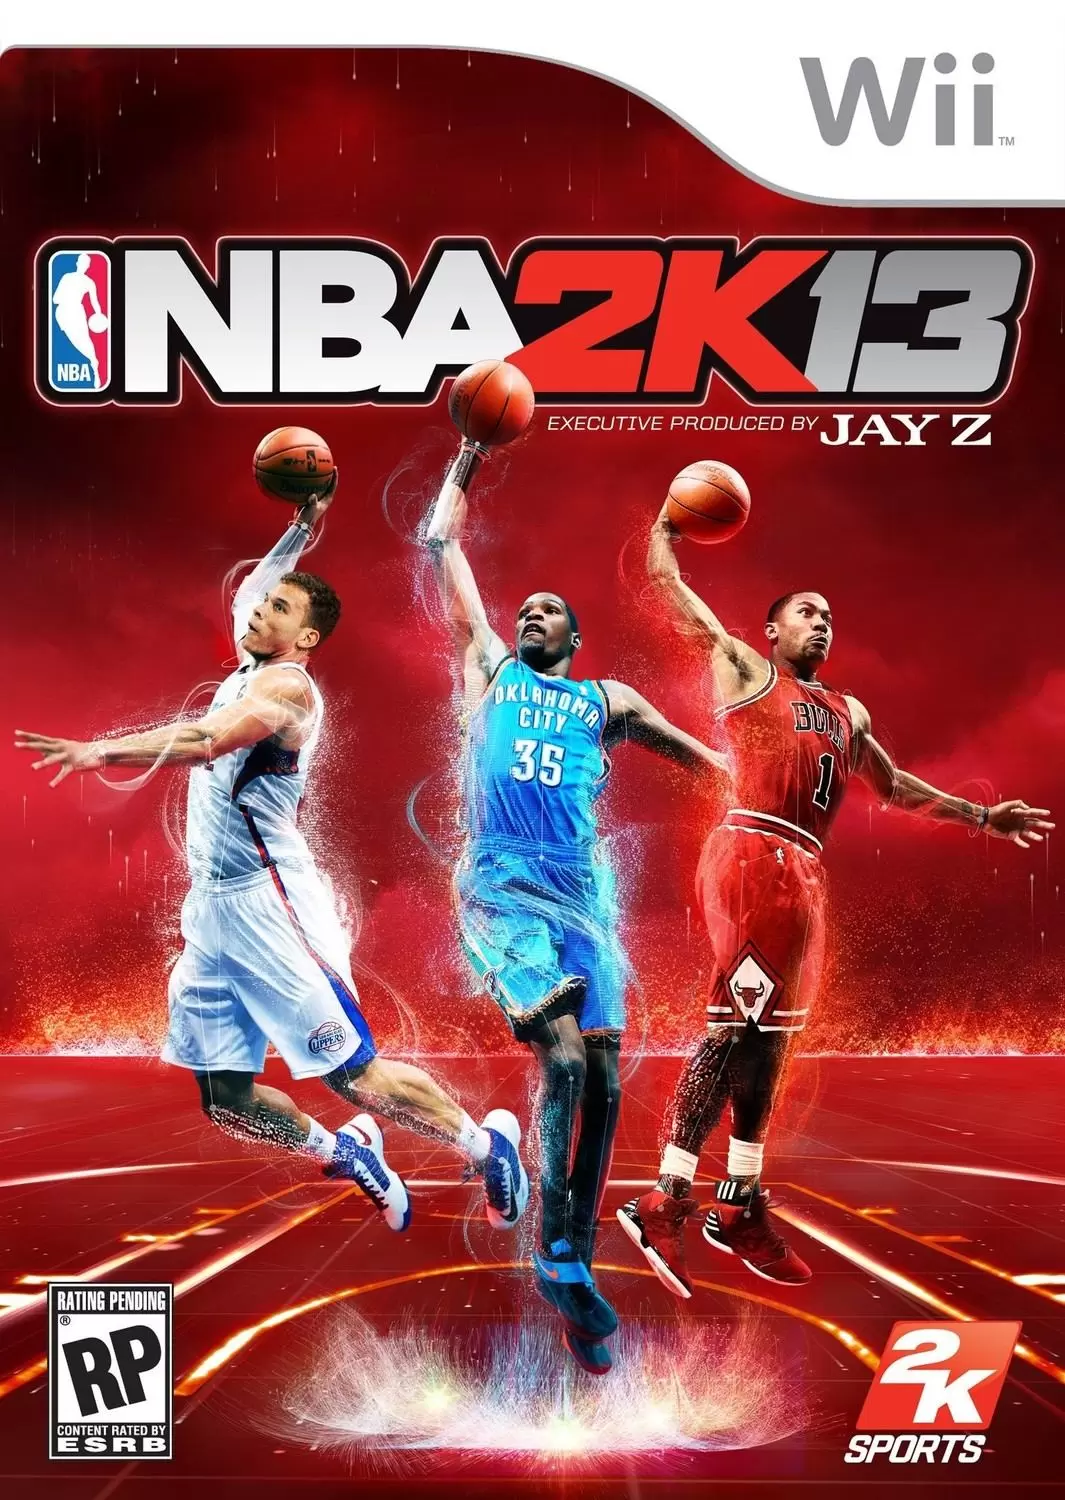 Nintendo Wii Games - NBA 2K13